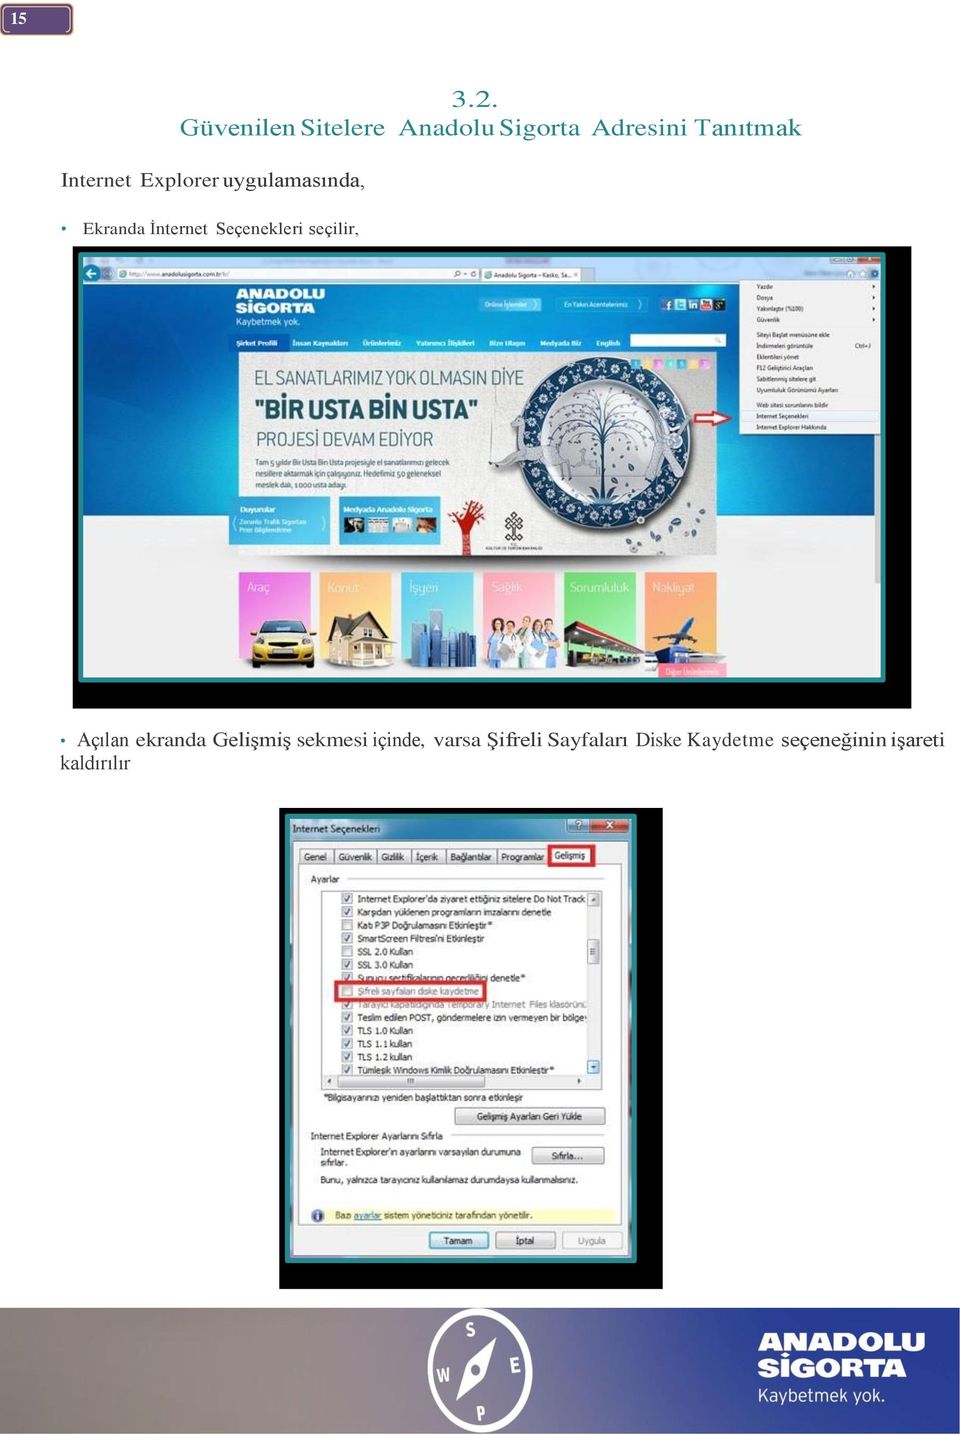 Internet Explorer uygulamasında, Ekranda İnternet